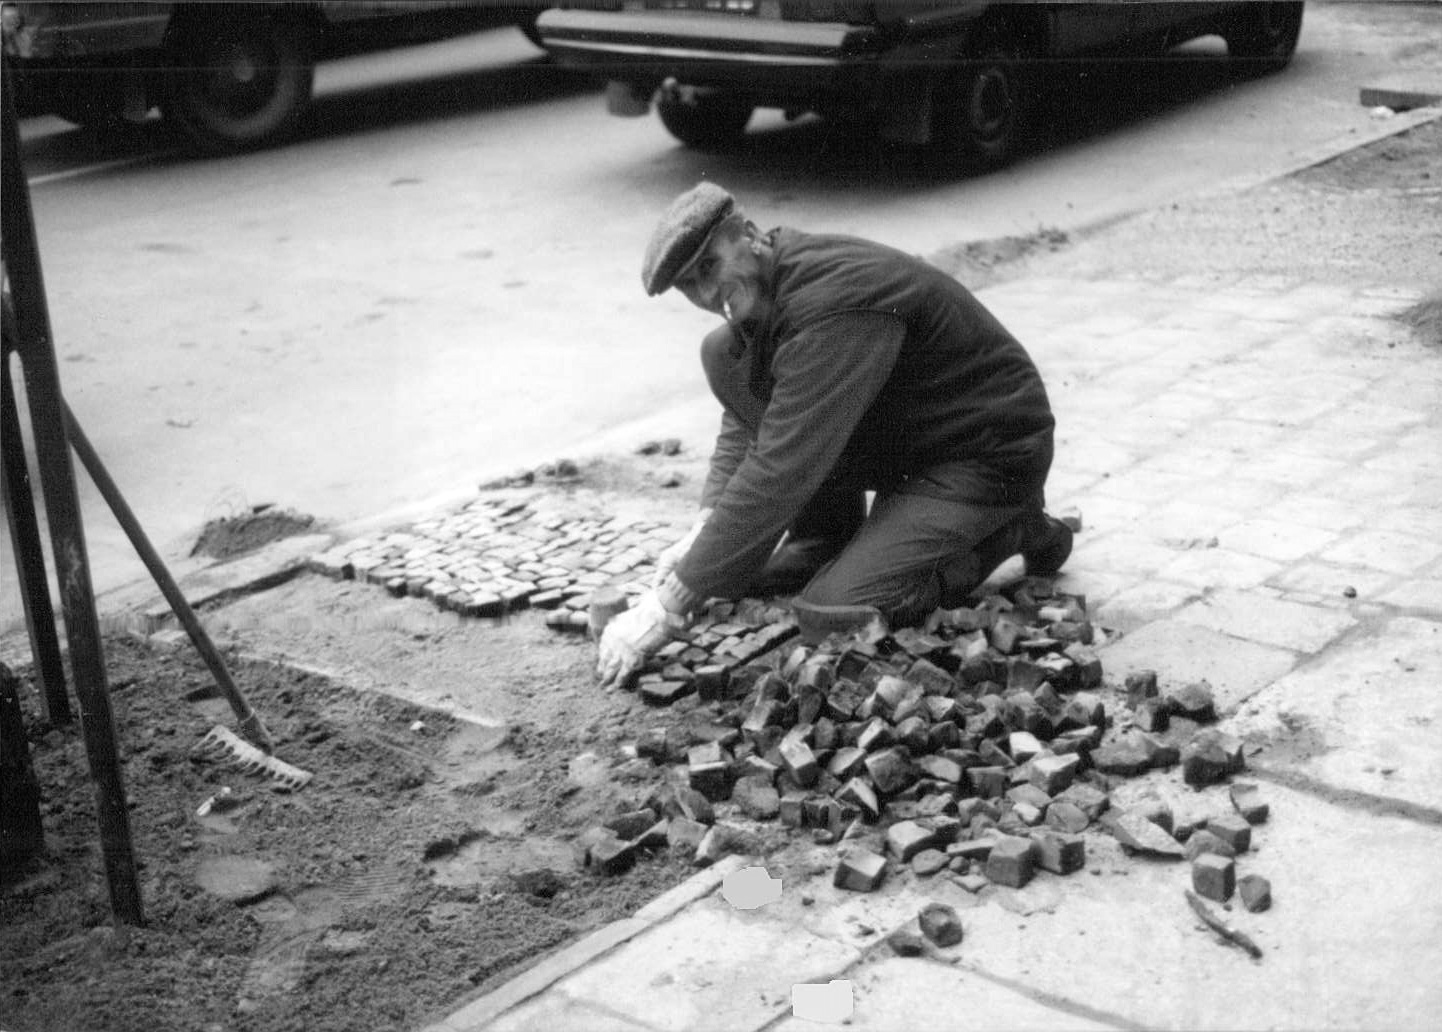 Poznań street worker, 1991